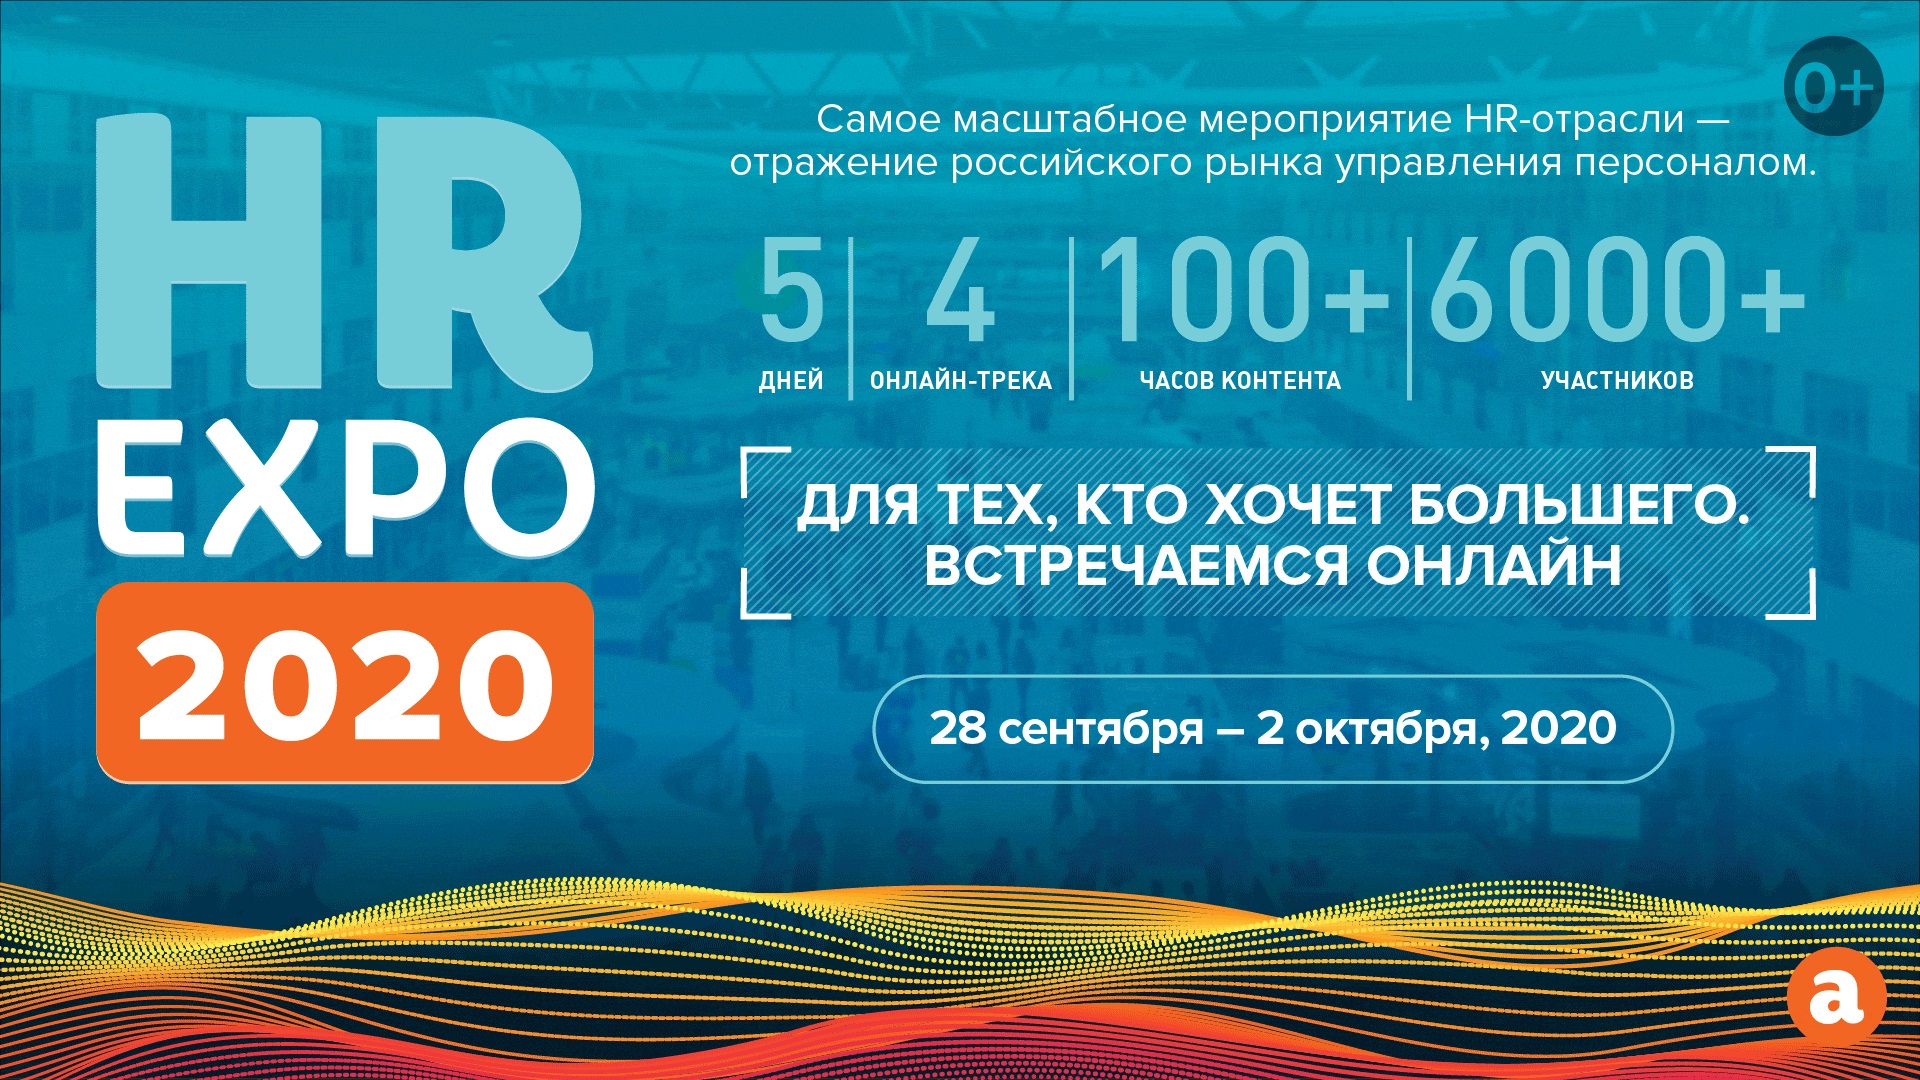 HR EXPO 2020: основные выводы онлайн-конференции, онлайн-конференция, HR EXPO 2020, HR EXPO, выводы онлайн-конференции, персонализация, обучение под новые роли и задачи бизнеса, лидерство и ответственность, путь клиента, экосистема развития